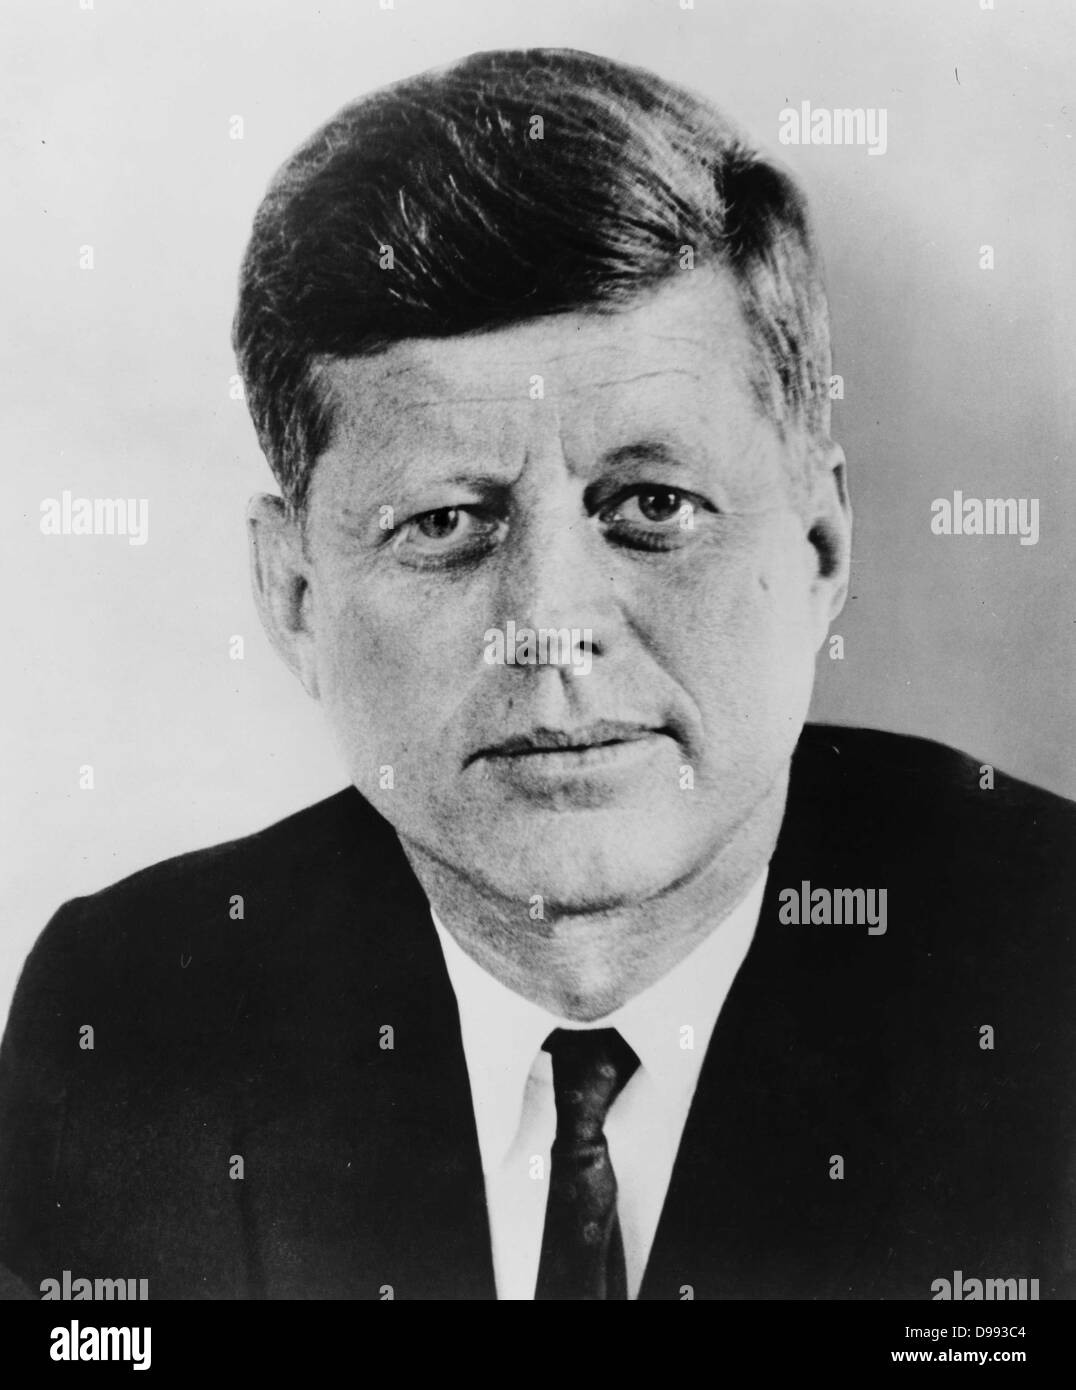 John Fitzgerald Kennedy (Mai 29, 1917 - November 22, 1963), 35. Präsident der Vereinigten Staaten und diente von 1961 bis zu seiner Ermordung im Jahre 1963. Stockfoto